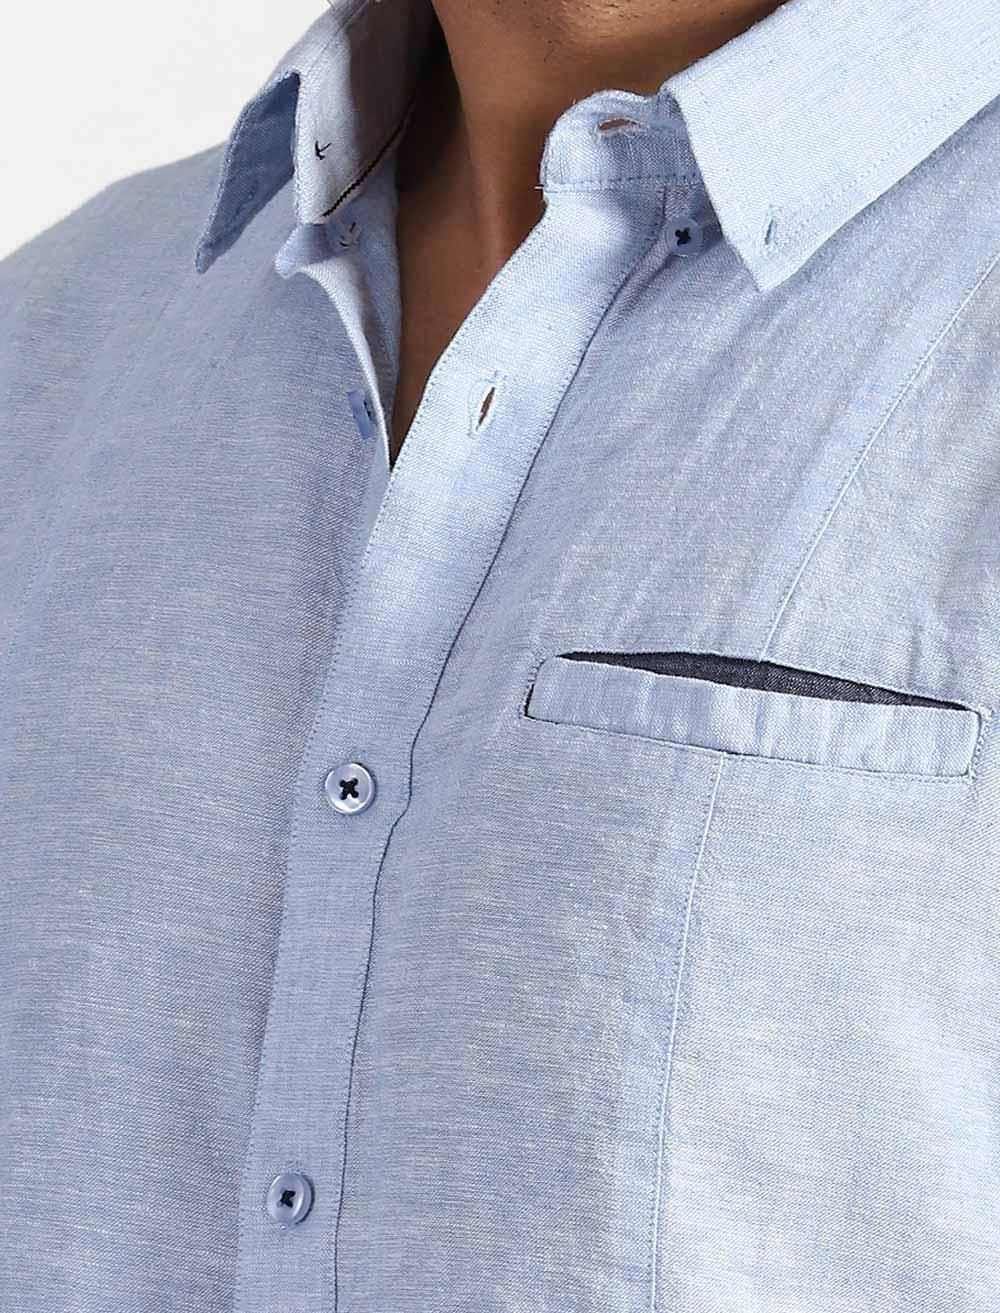 Men's Short Sleeve Shirt - Blucheez